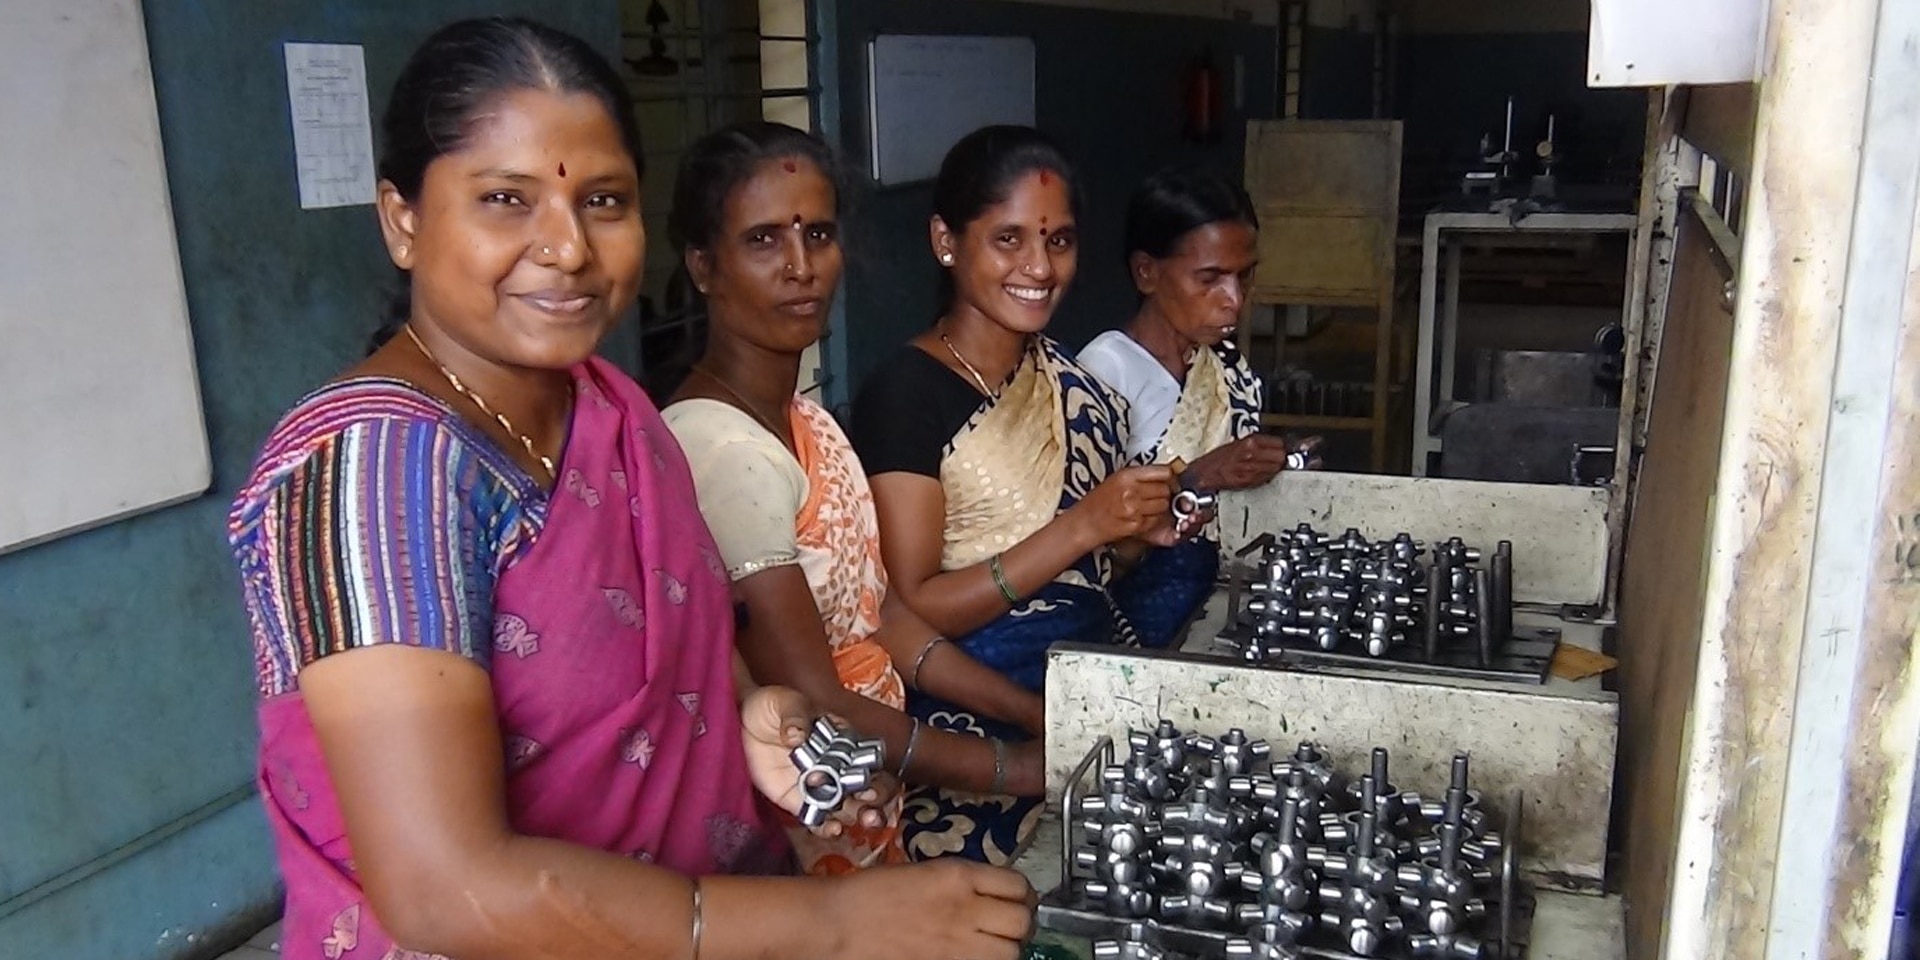 En la imagen, cuatro mujeres de origen indio mientras ensamblan piezas metálicas.